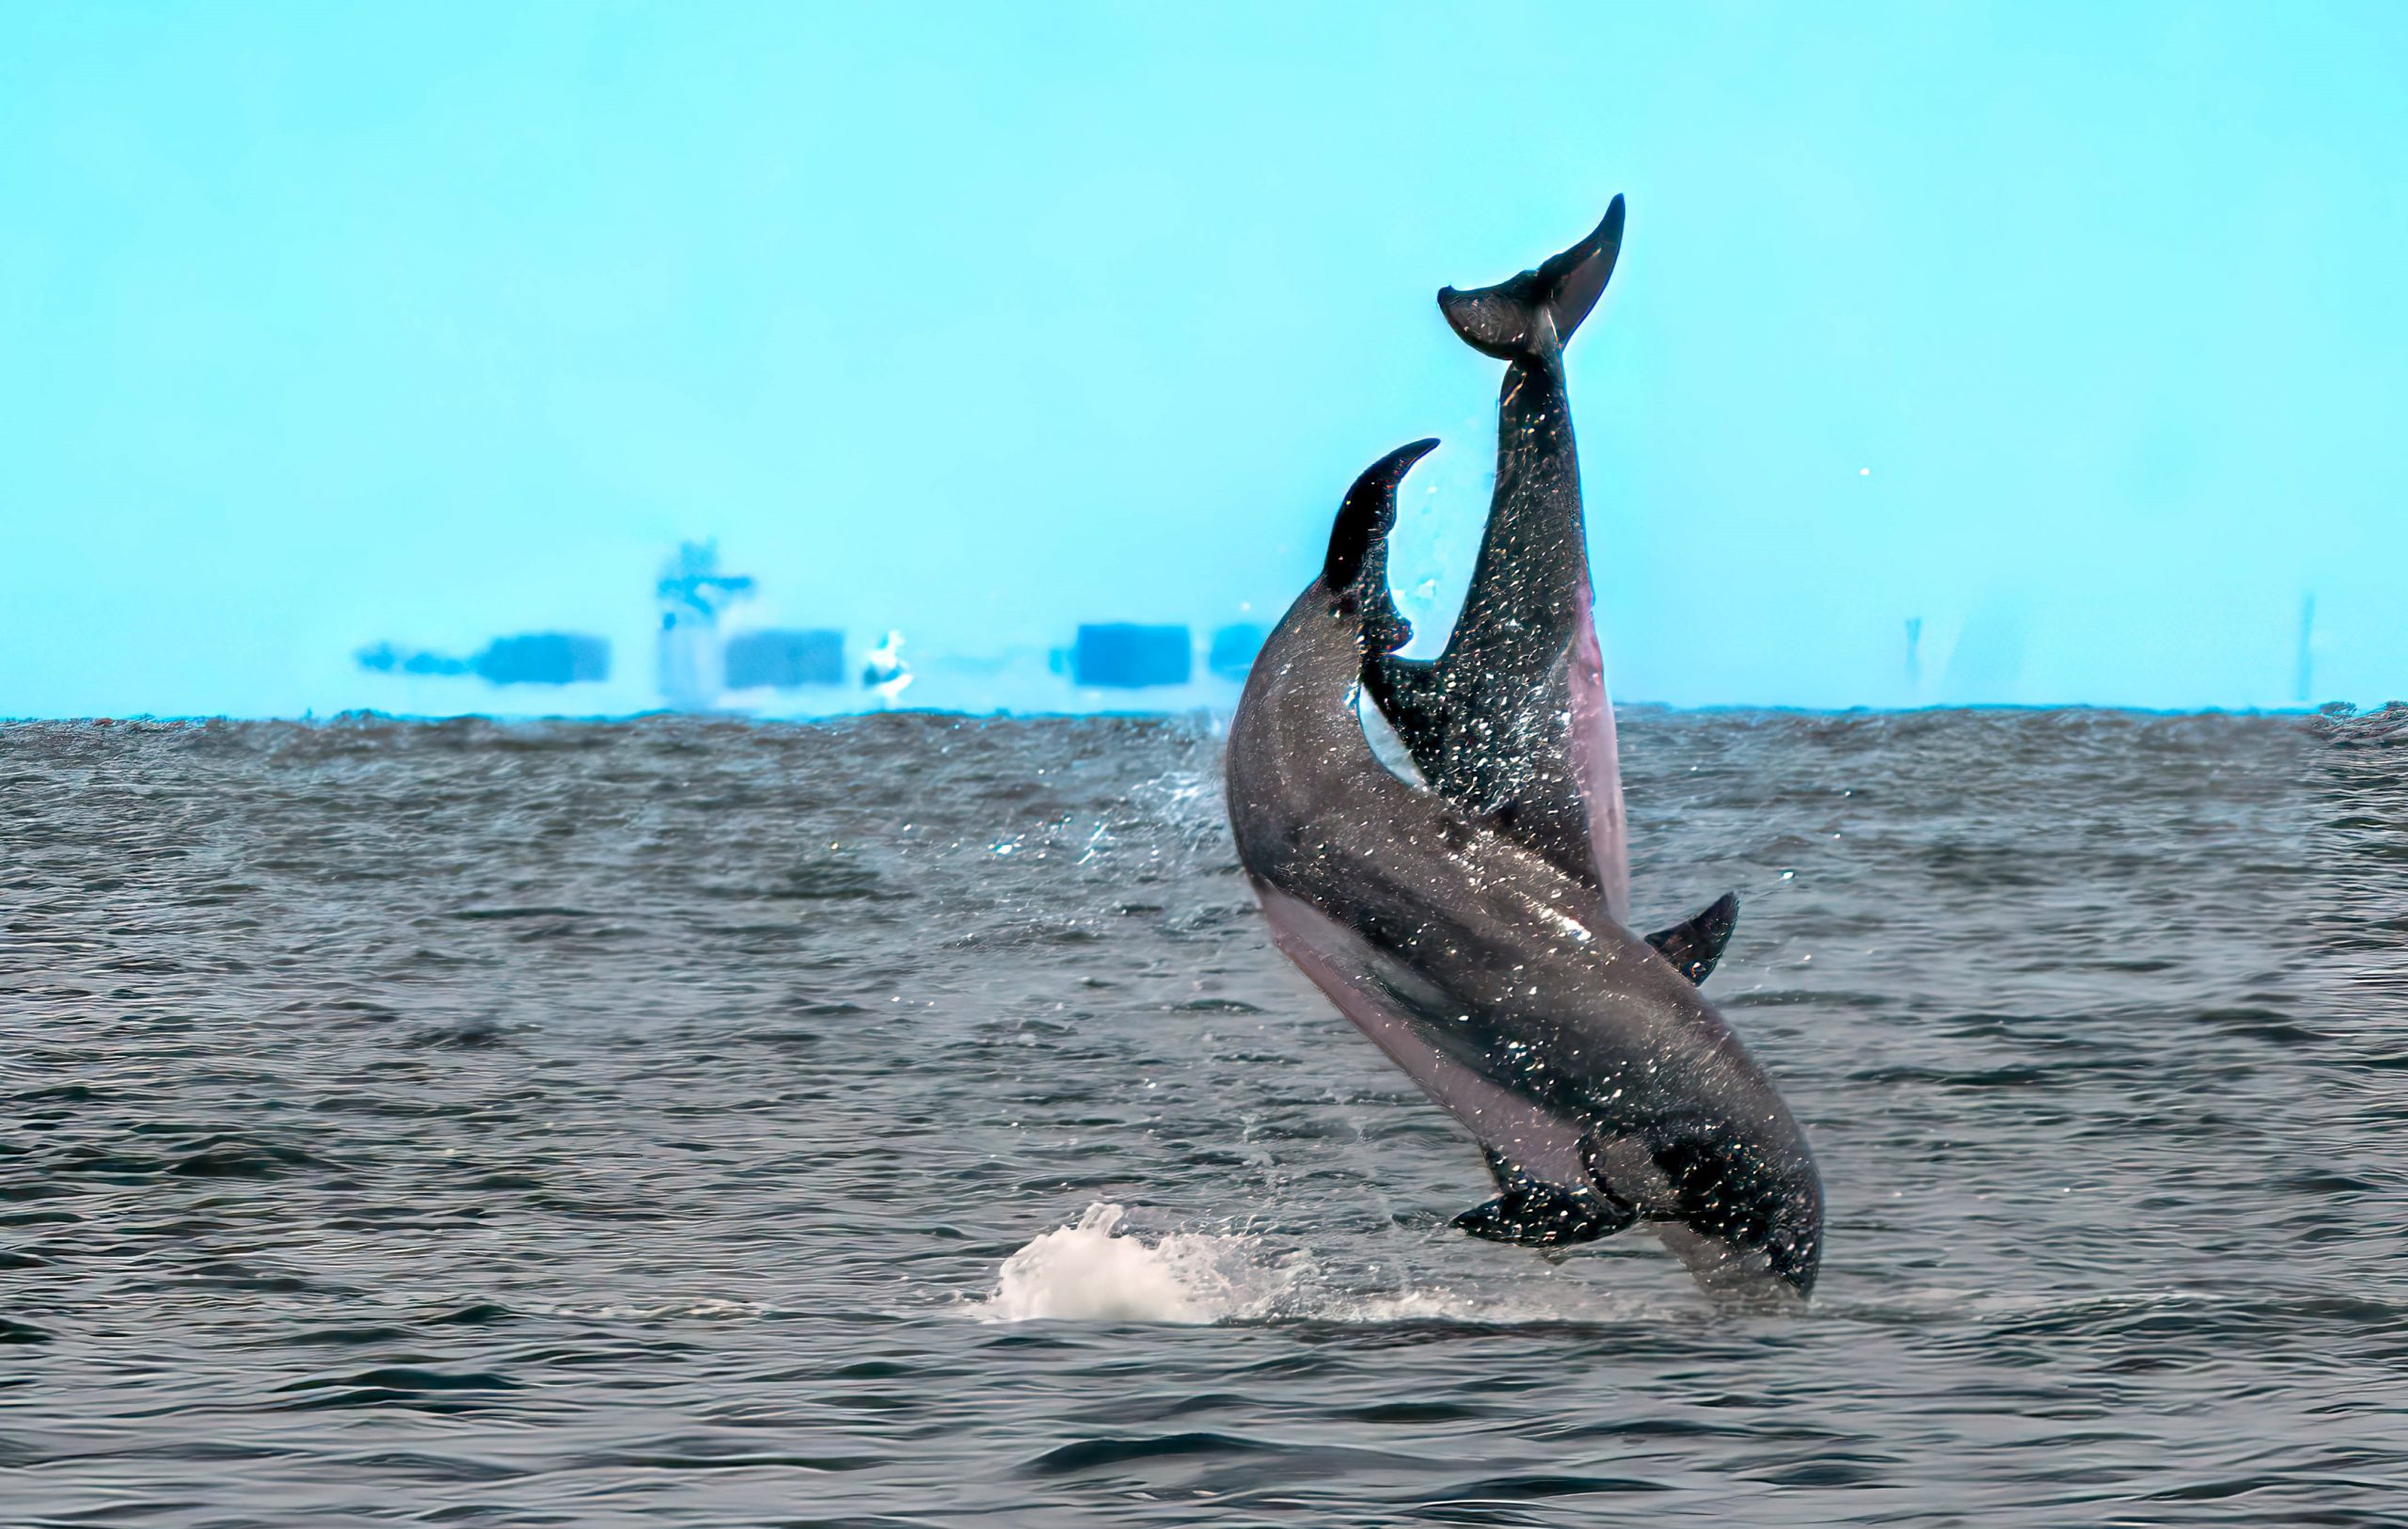 1a dolphin